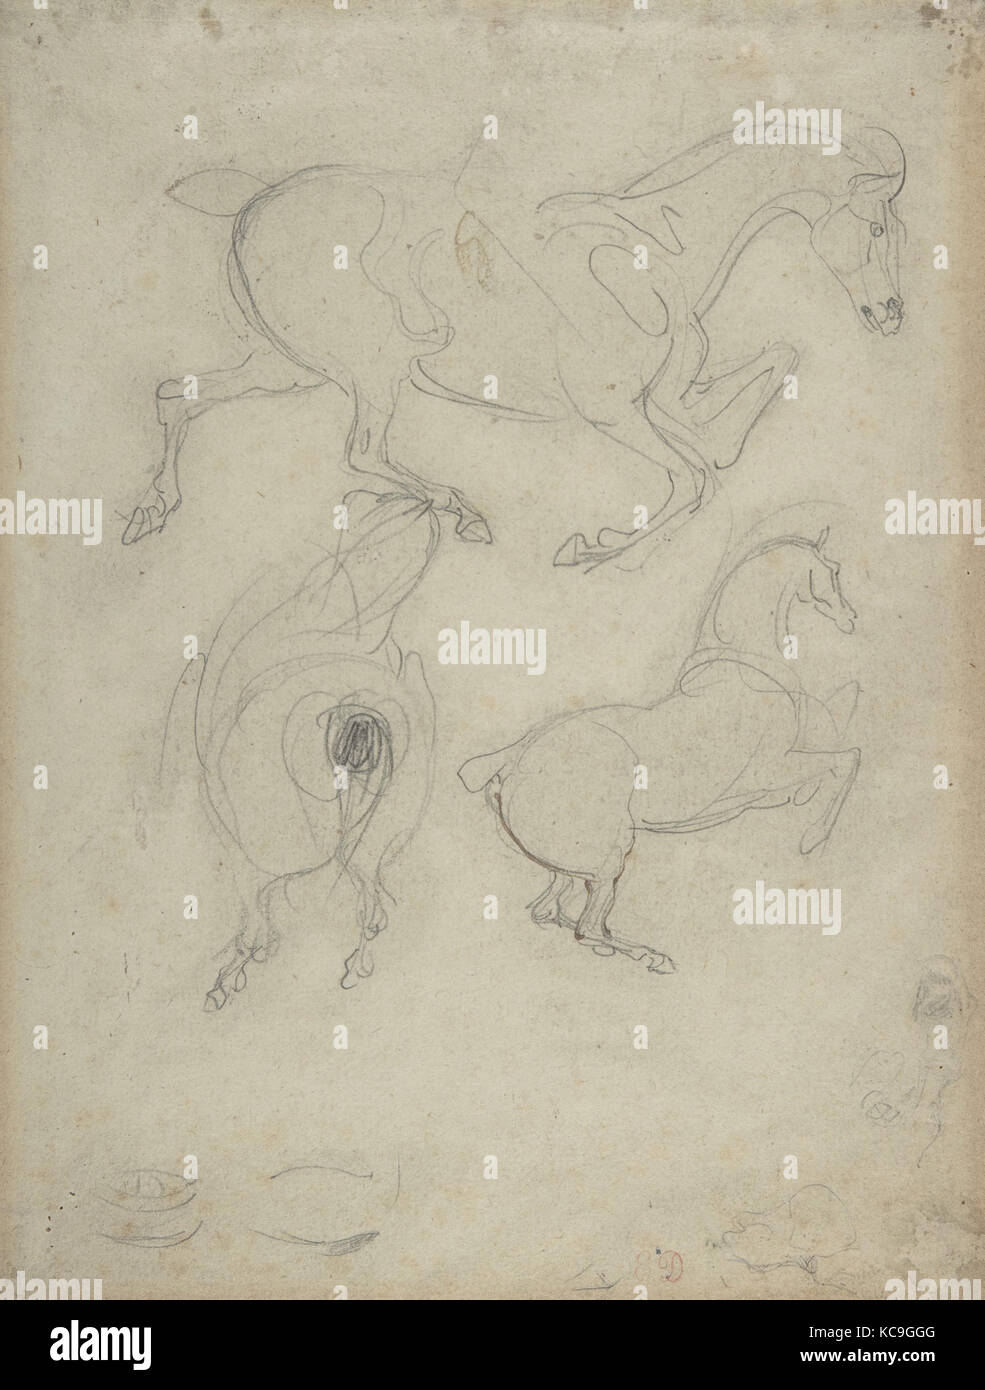 L'étude des chevaux, de graphite et de traces d'encre brune sur papier vergé, 10-3/8 x 7-7/8 in. (26,4 x 20,0 cm), dessins, Eugène Banque D'Images